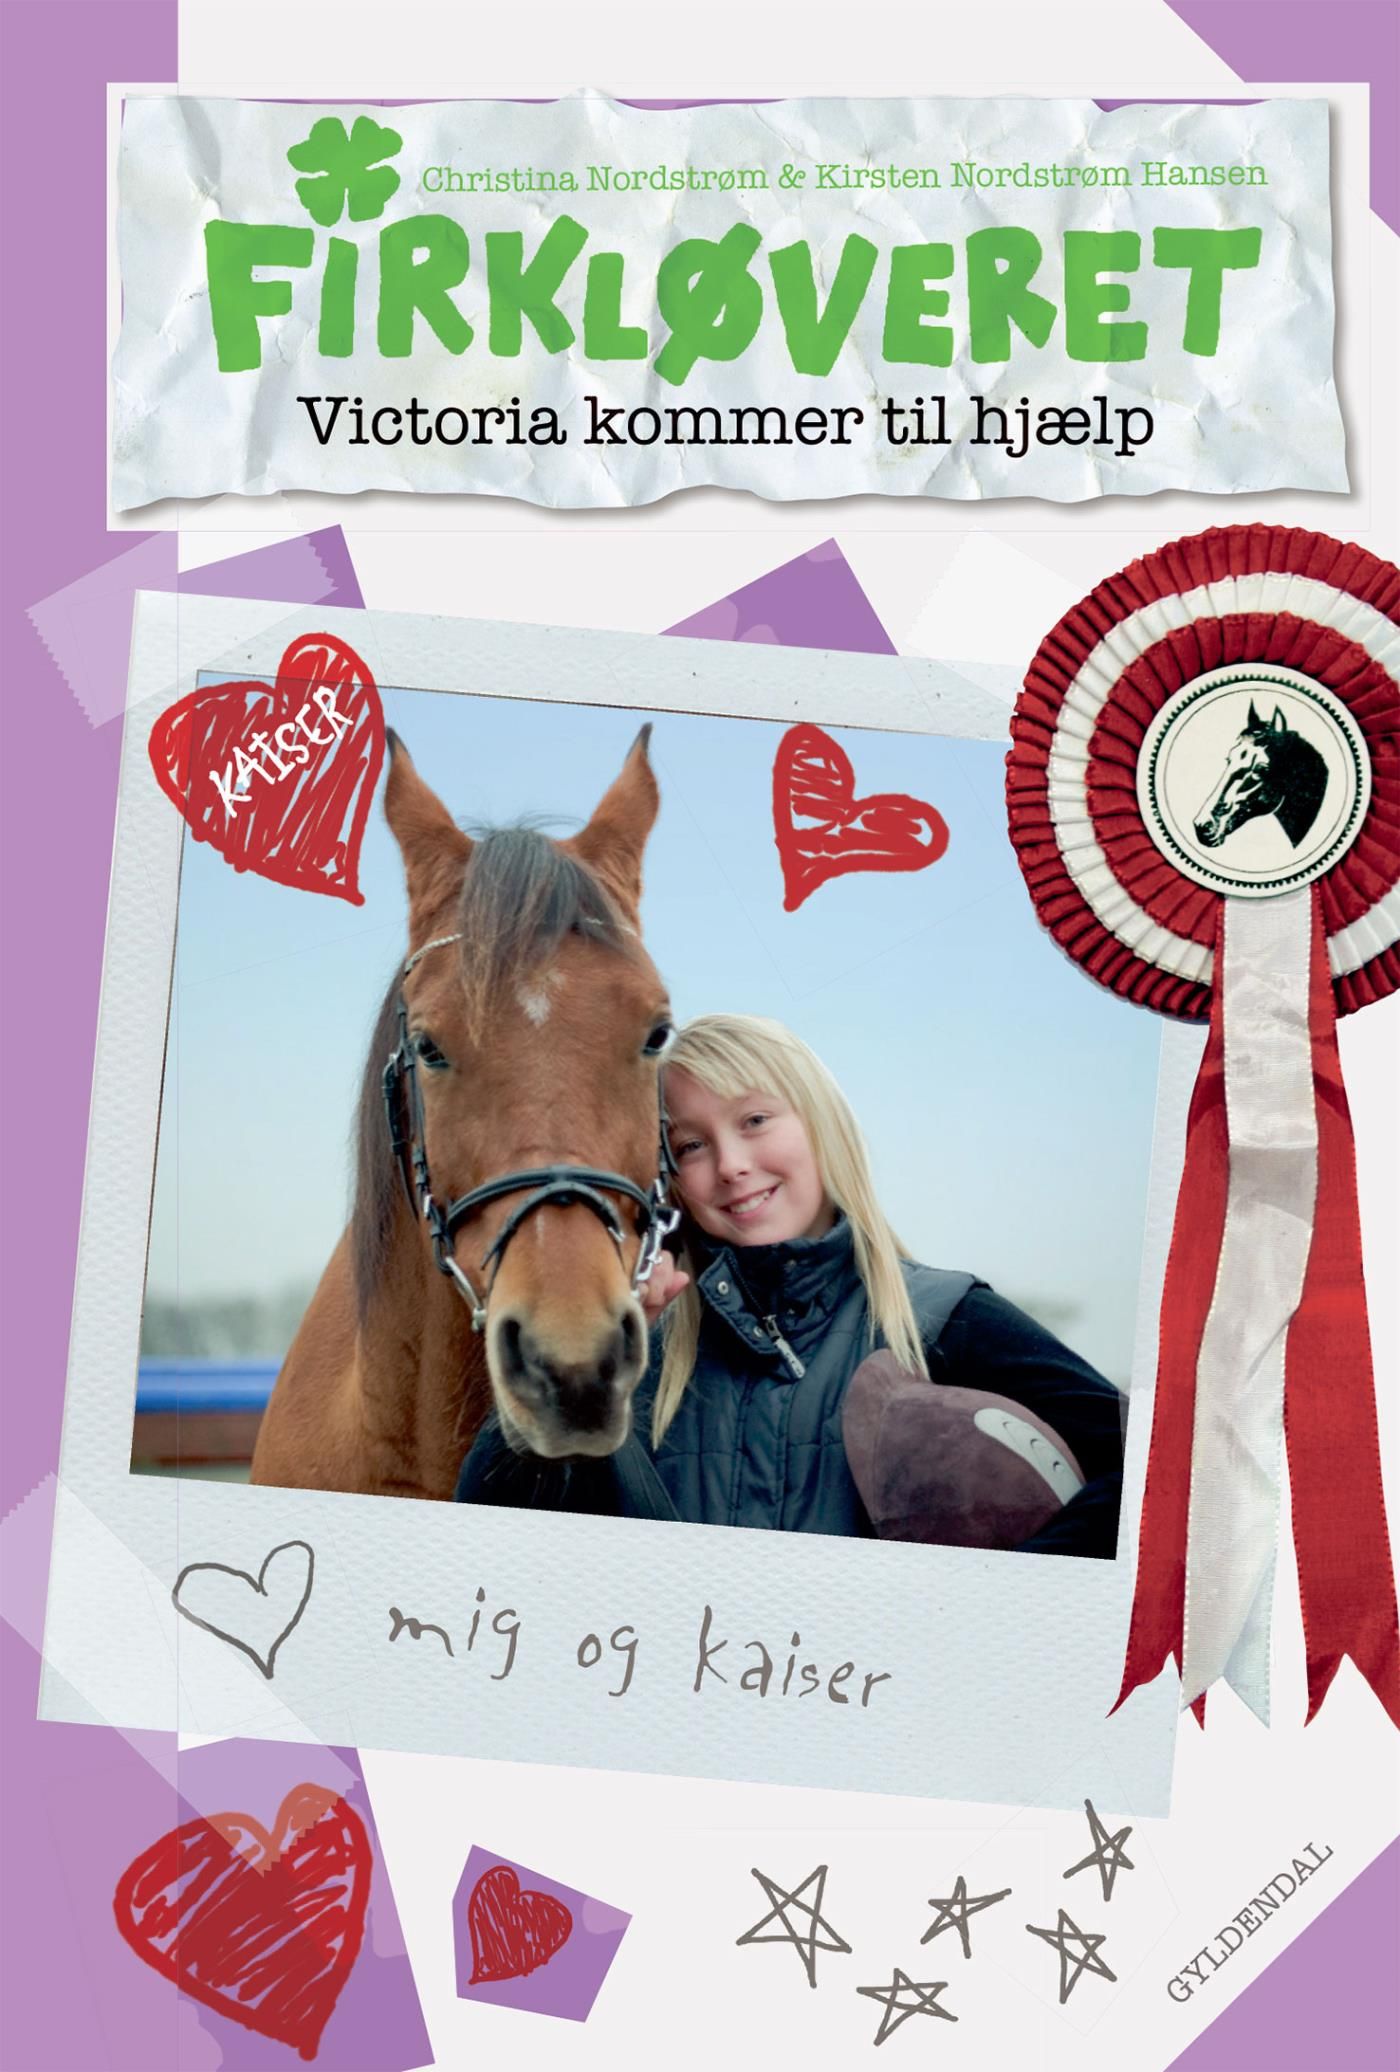 Firkløveret 1 - Victoria kommer til hjælp, e-bog af Kirsten Nordstrøm Hansen, Christina Nordstrøm